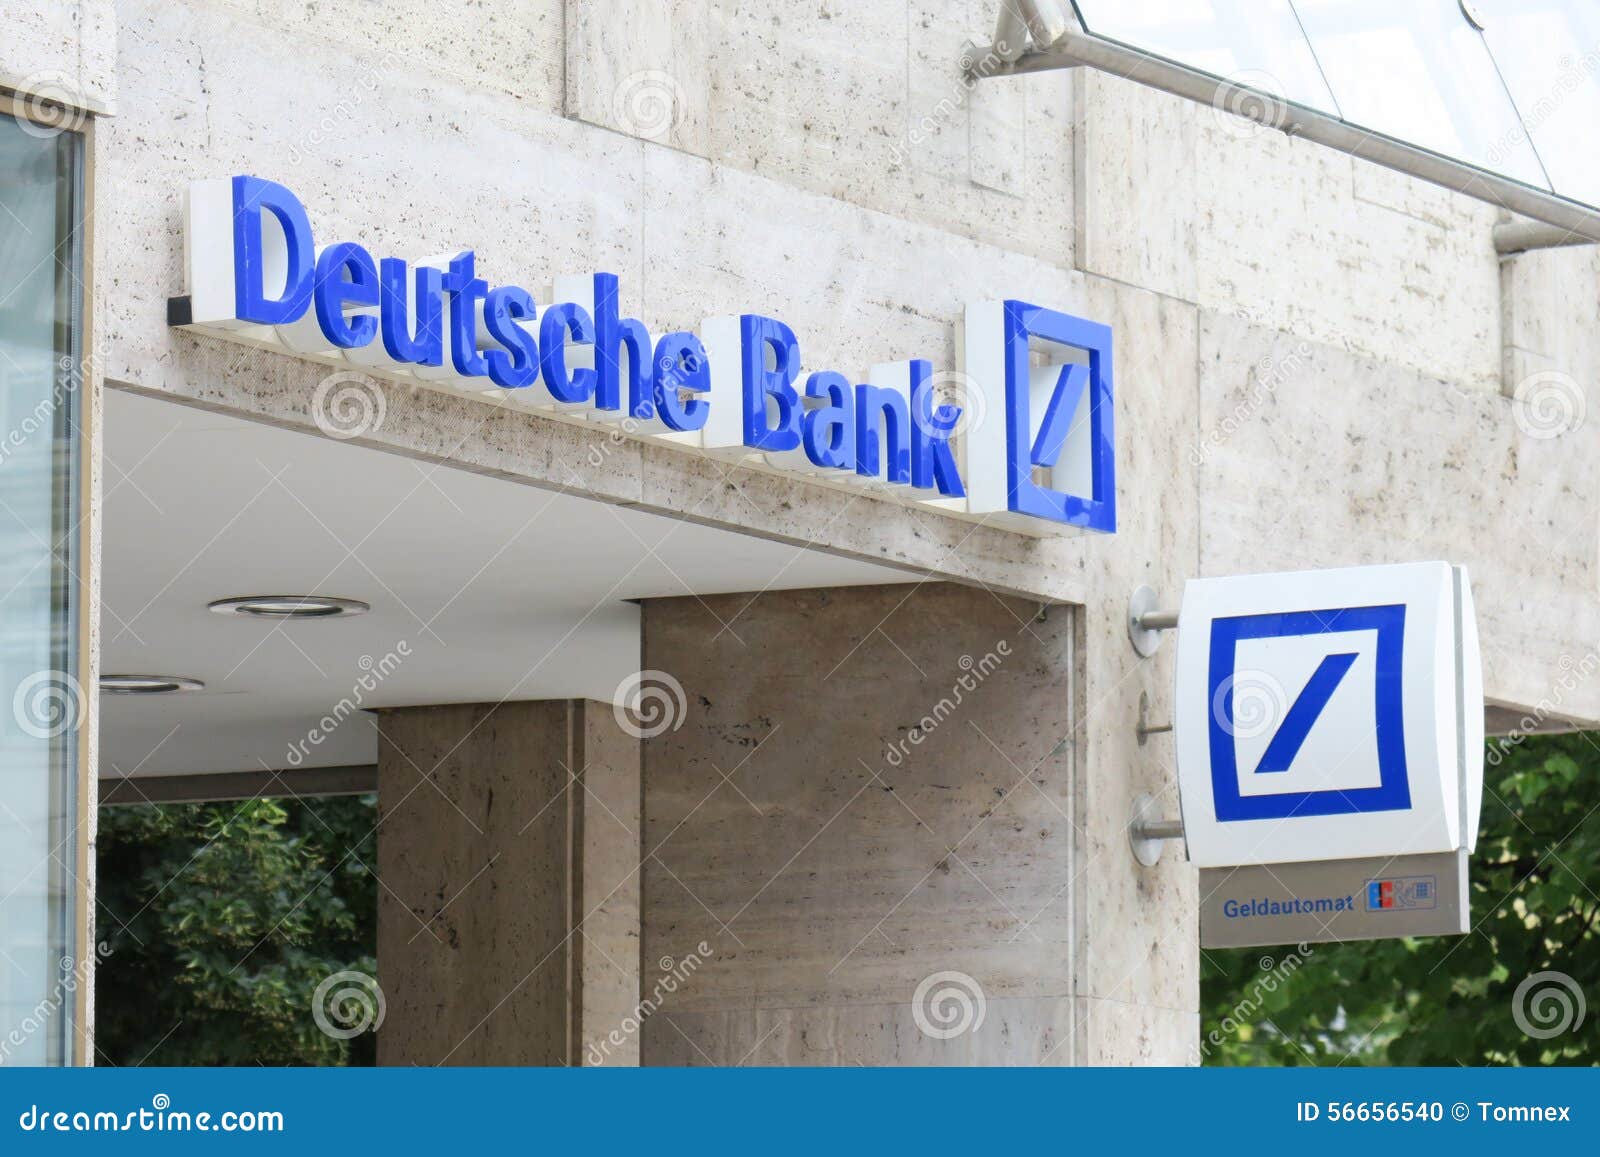 clipart deutsche bank - photo #46